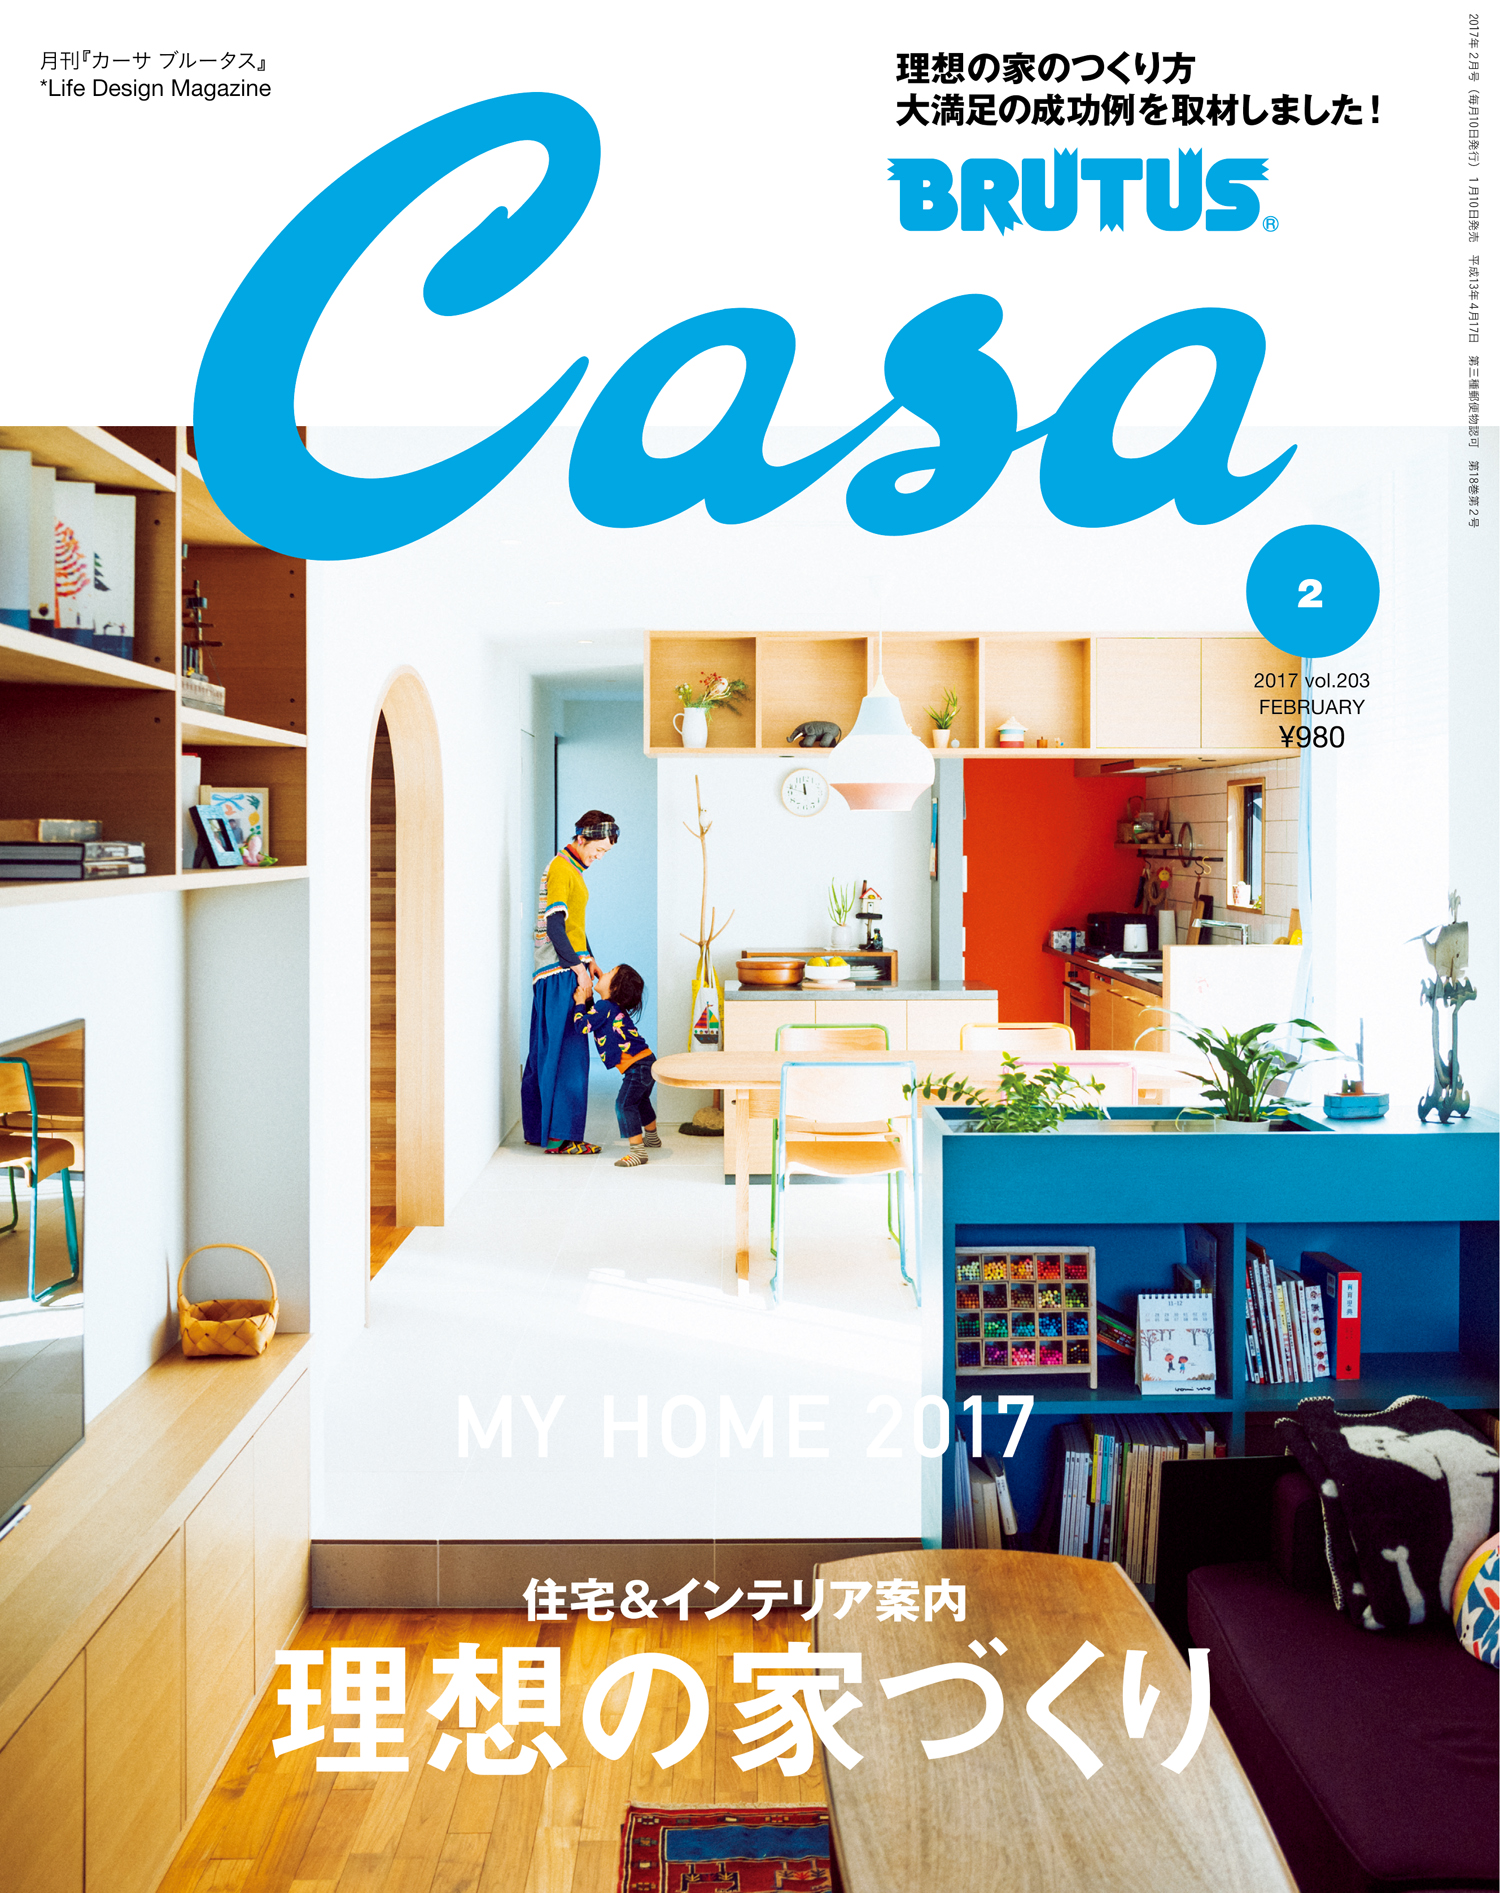 Casa BRUTUS(カーサ ブルータス) 2017年 2月号 [理想の家づくり